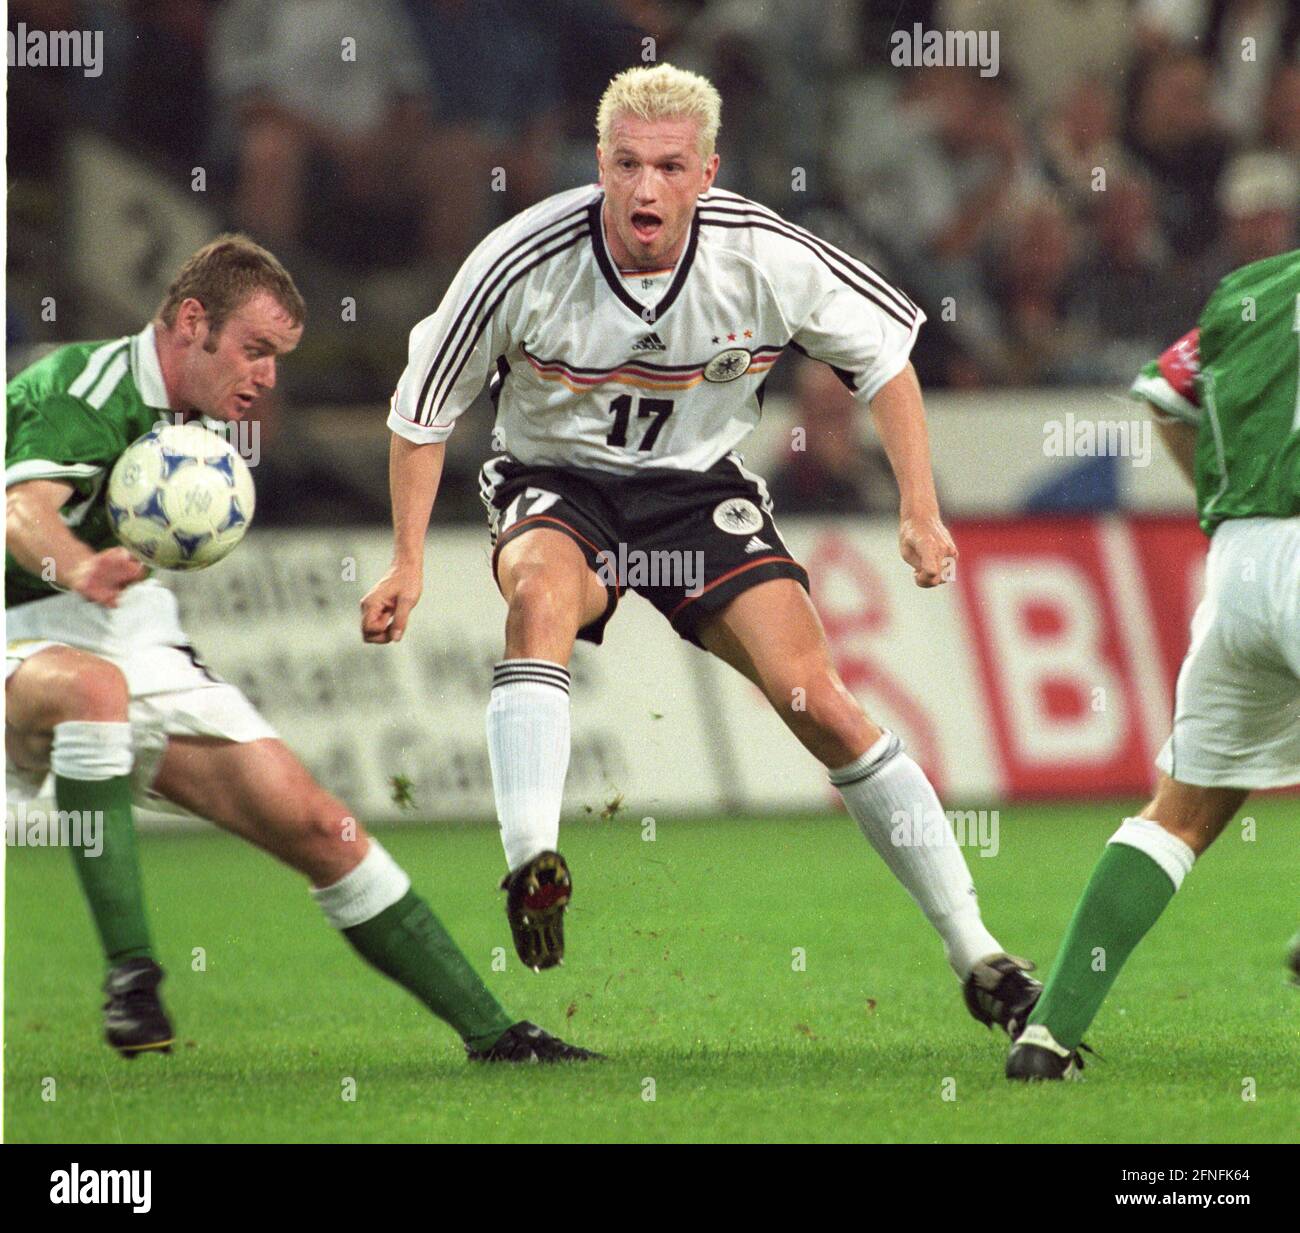 Campionato europeo di qualificazione : Germania - Irlanda del Nord 4:0/08.09.1999 a Dortmund. Thomas Strunz (Deut.) spara. [traduzione automatizzata] Foto Stock